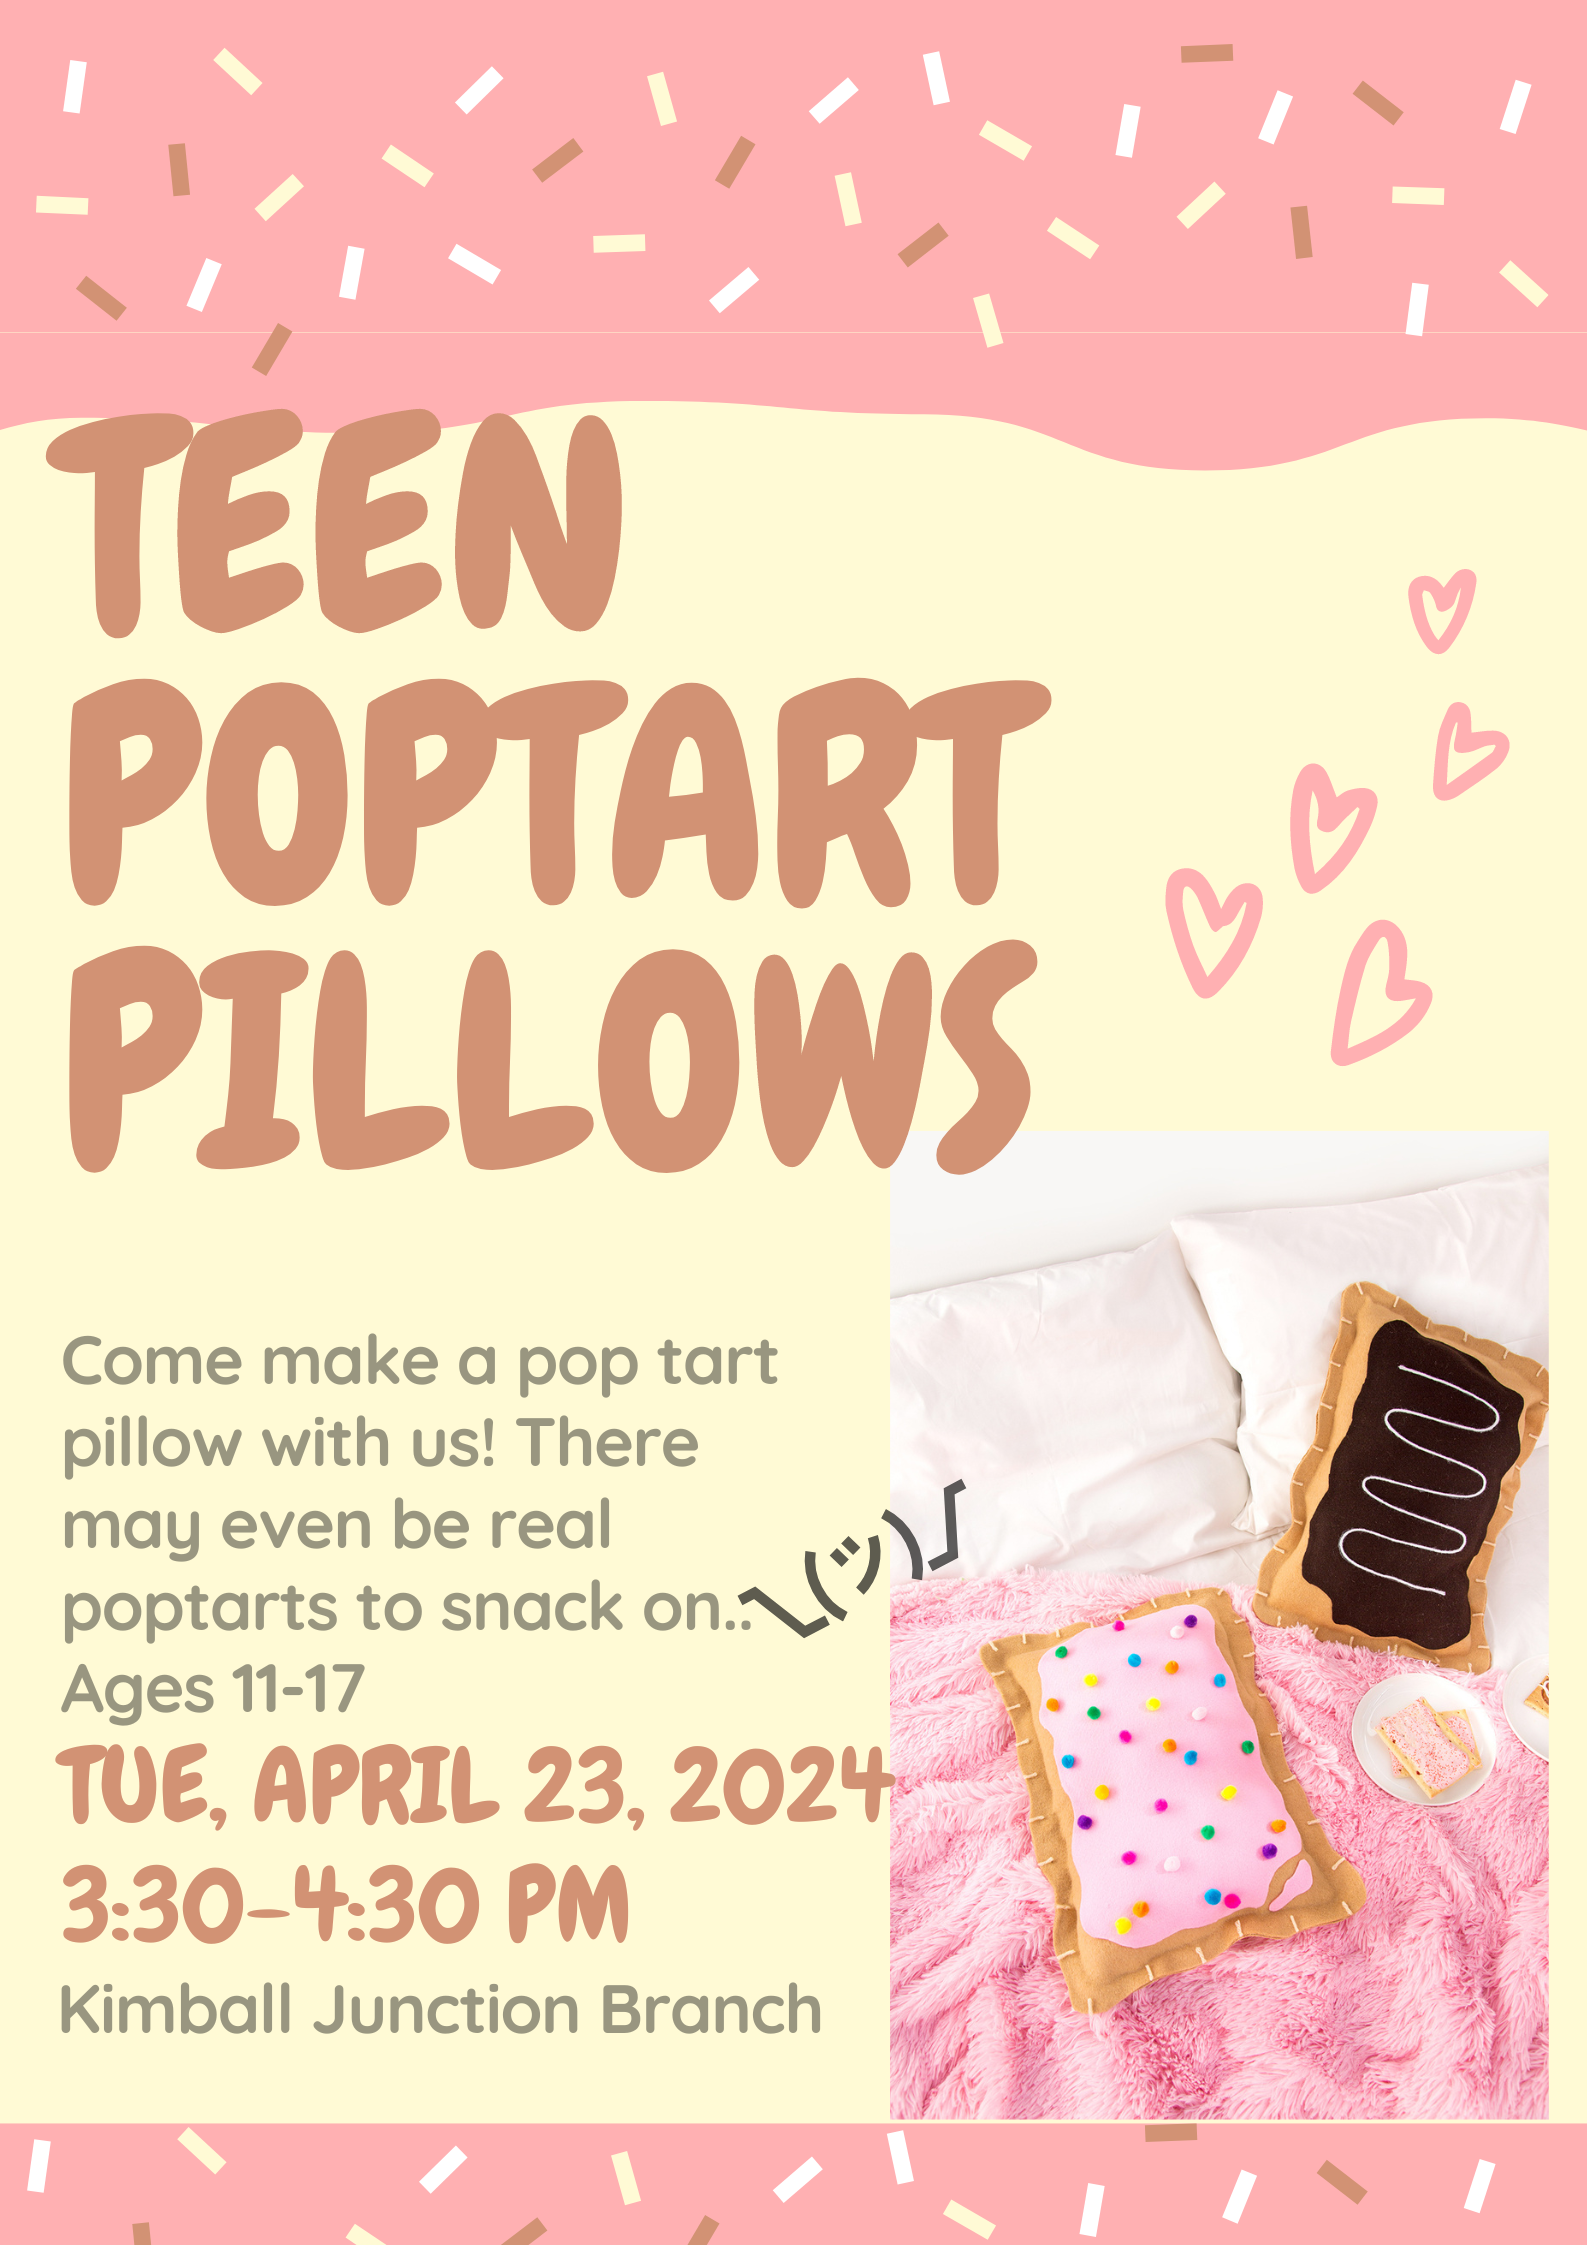 Teen DIY Pop-Tart Pillows at Kimball Junction